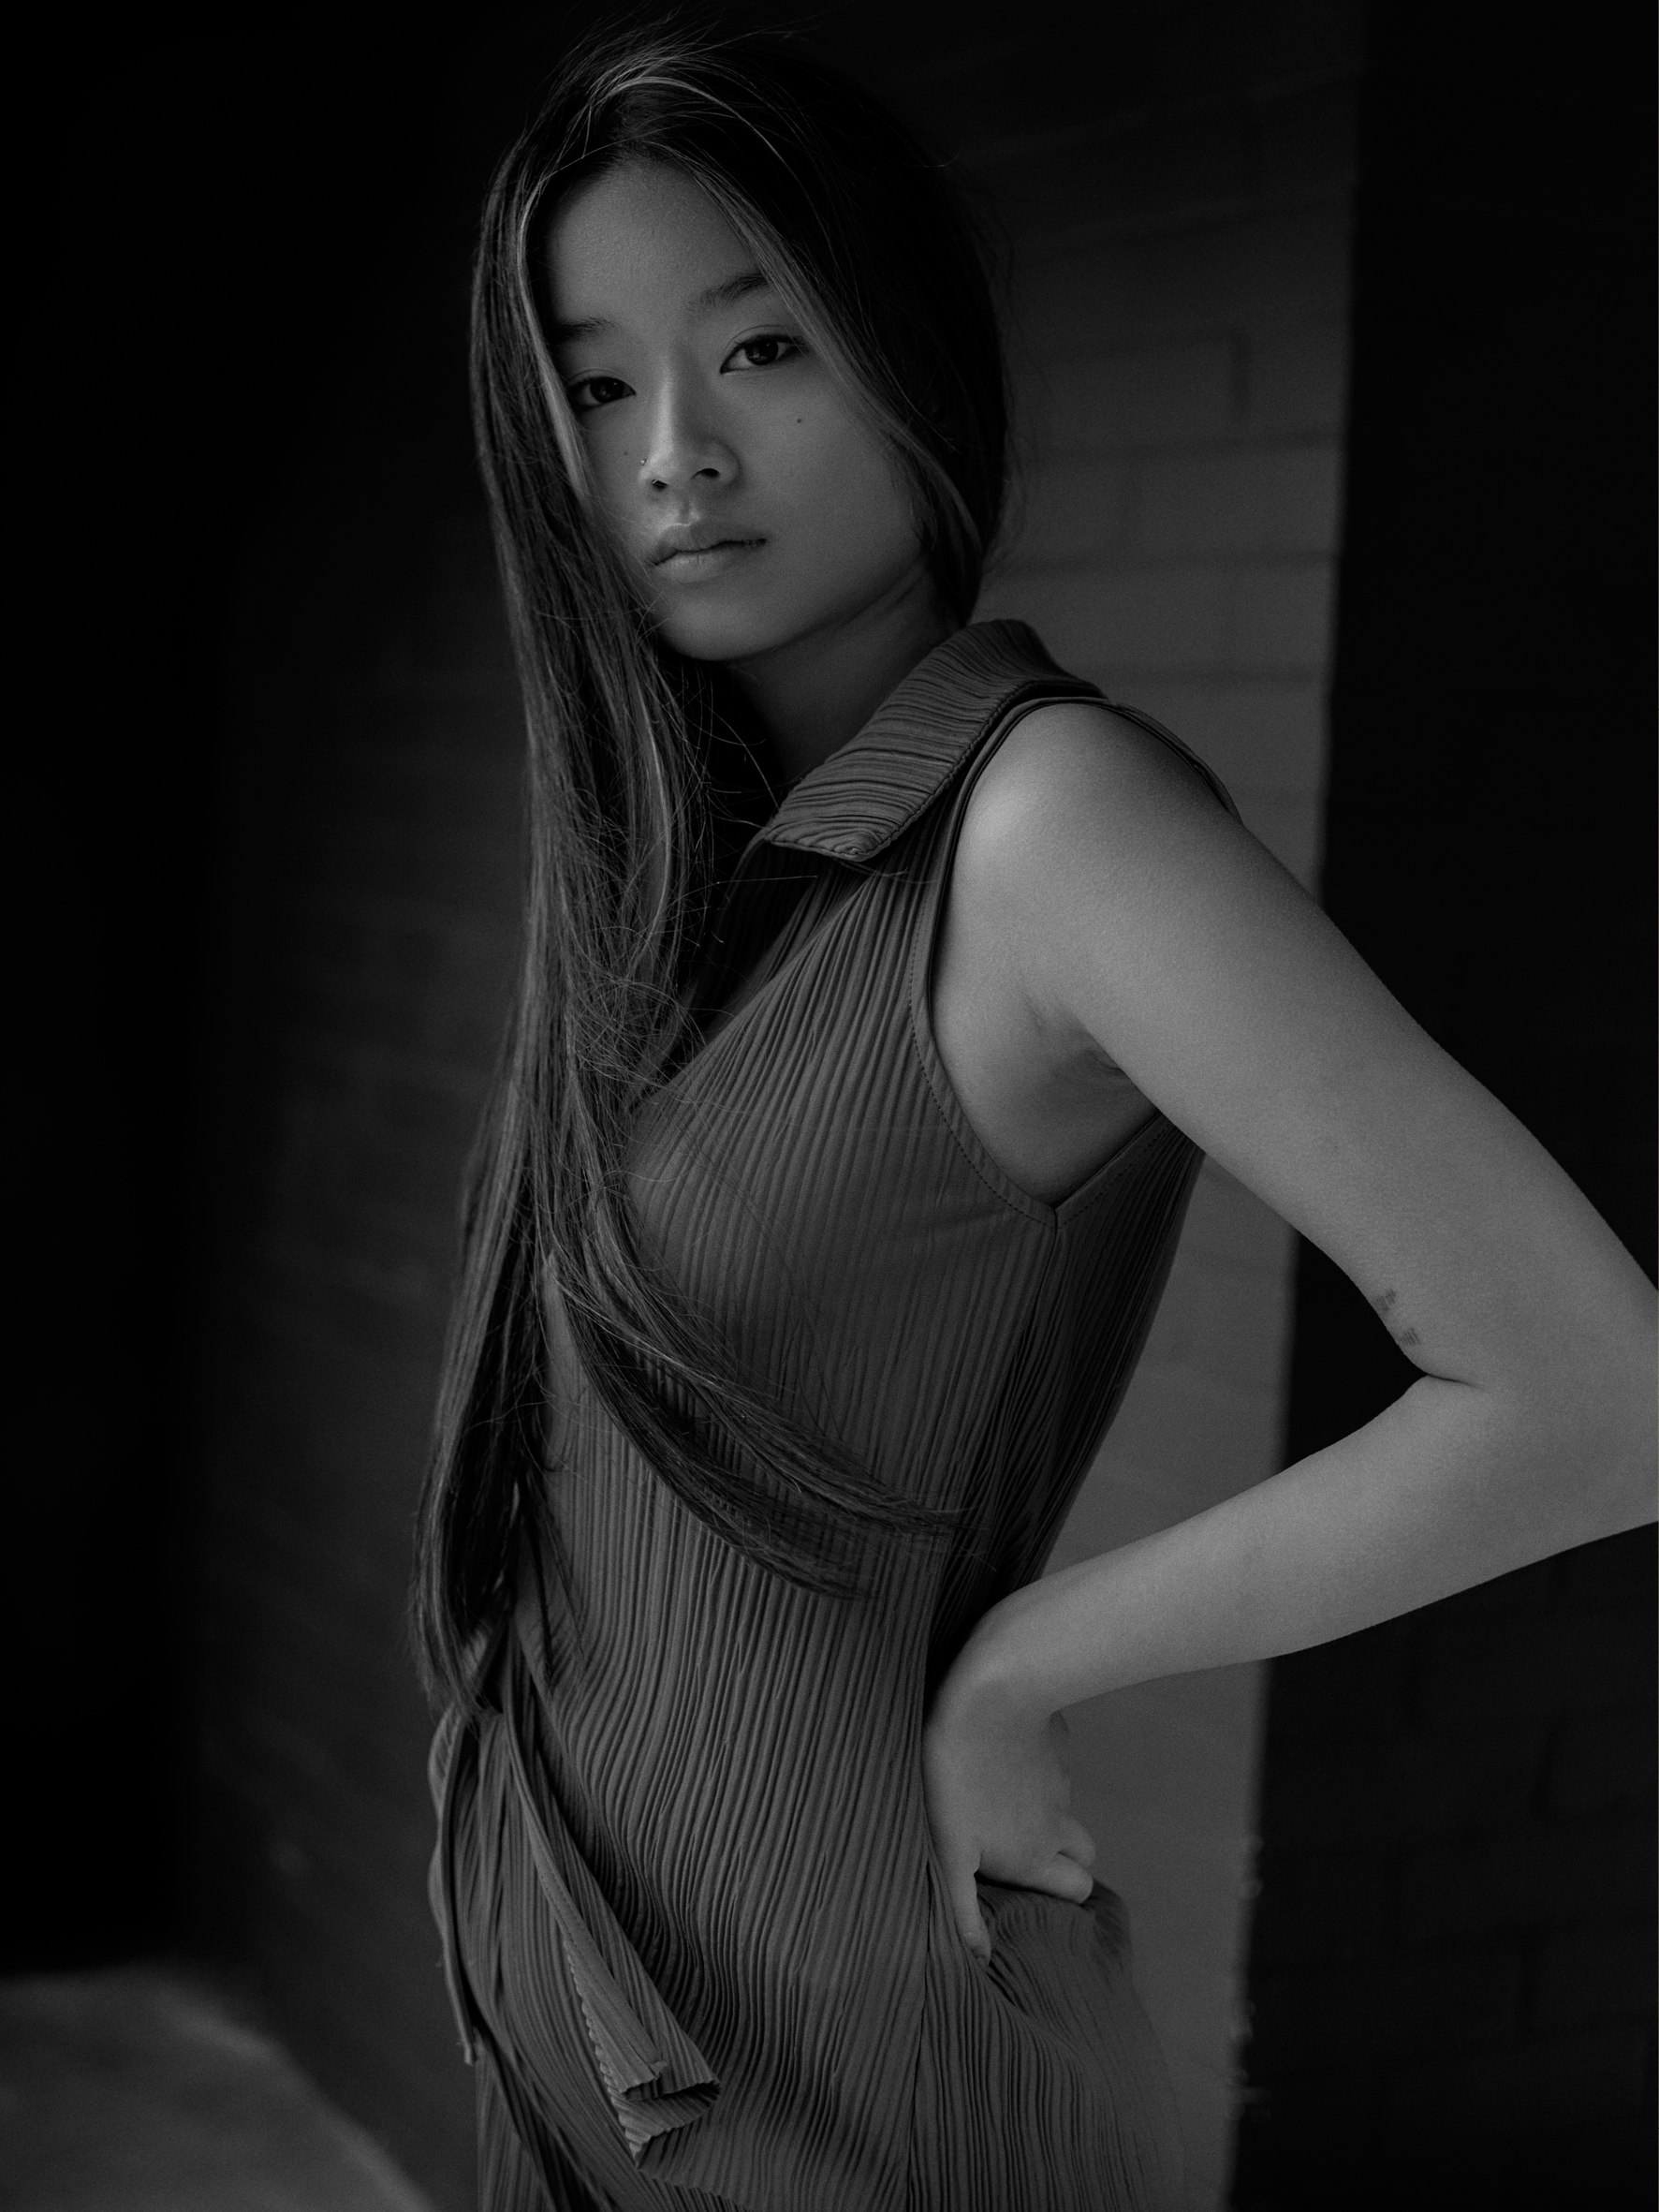 An image of Jessica Peng